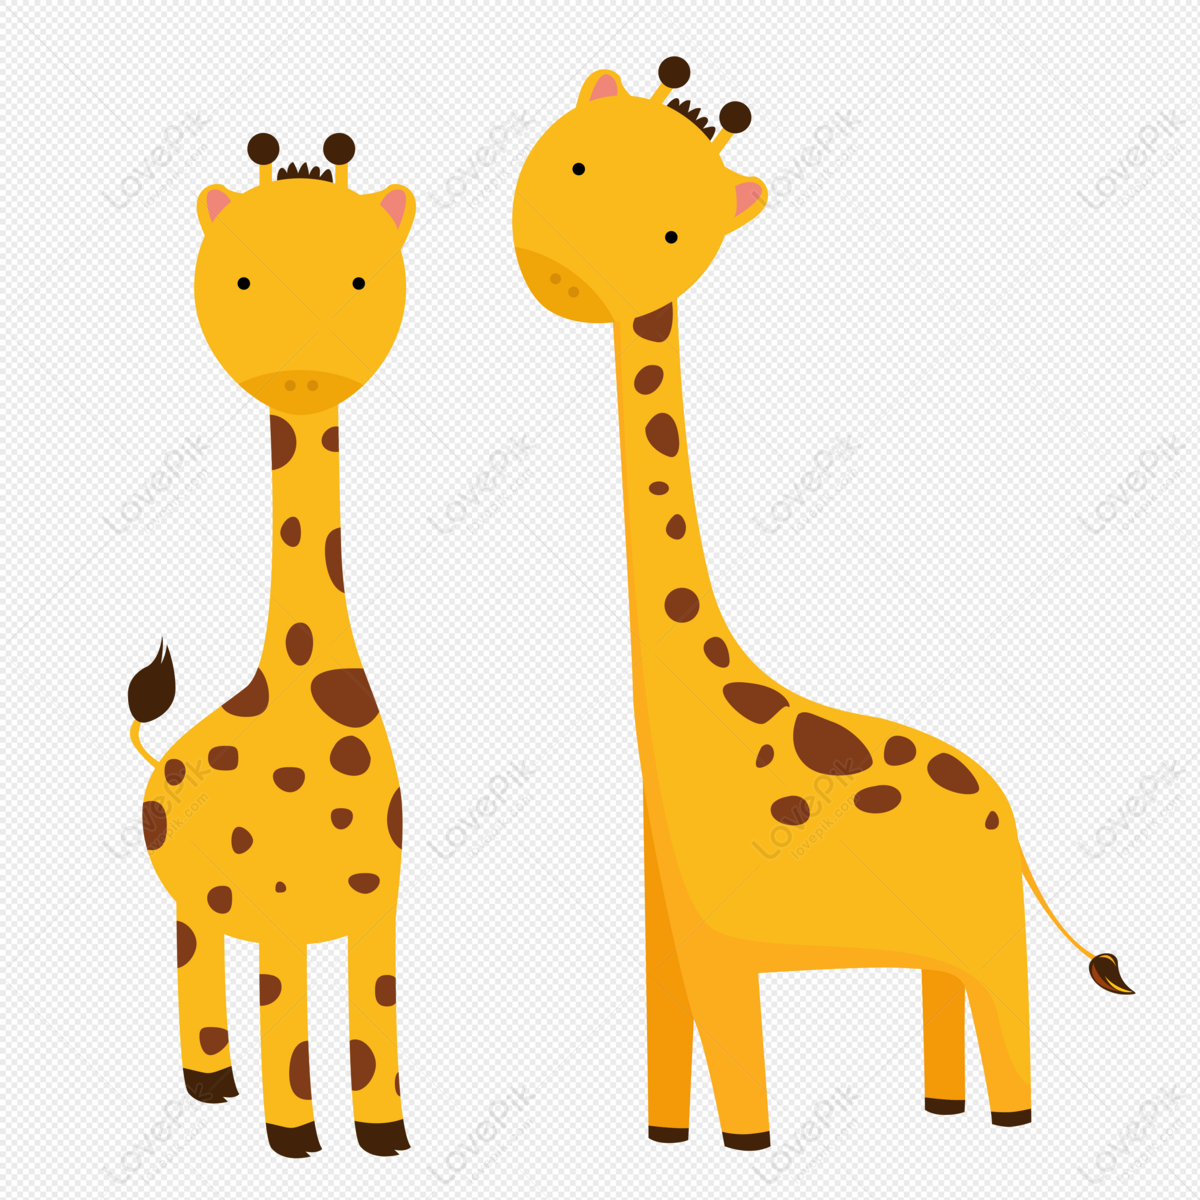 Giraffe animal cartoon giraffe, giraffe animal, cartoon giraffe, cartoon animal png picture